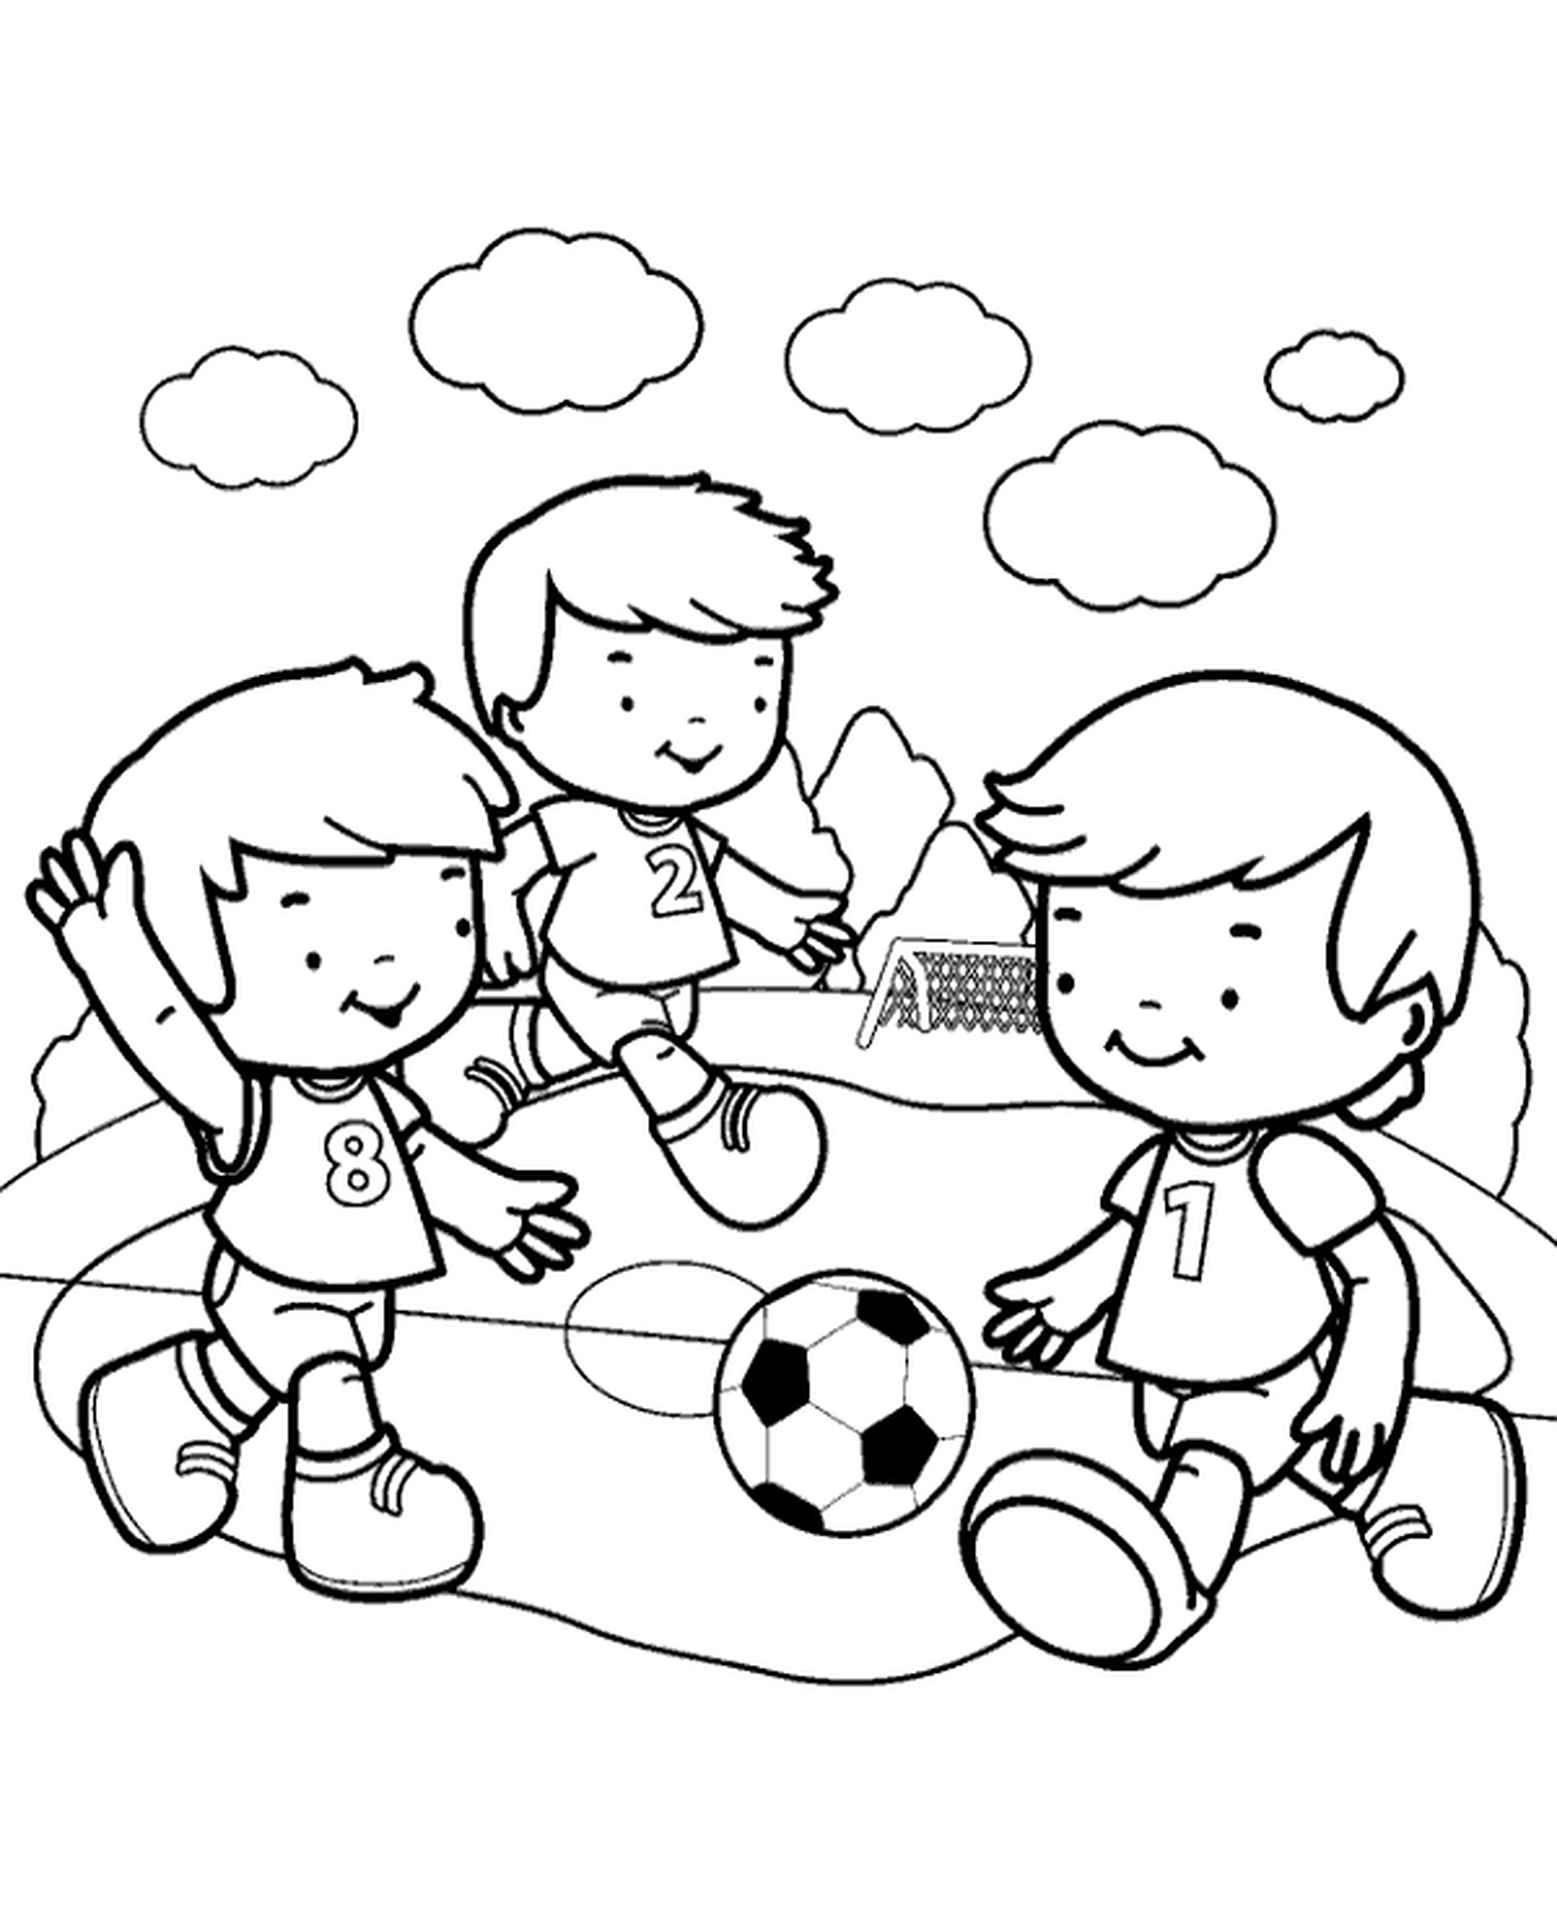 Раскраска на тему игра в футбол для детей